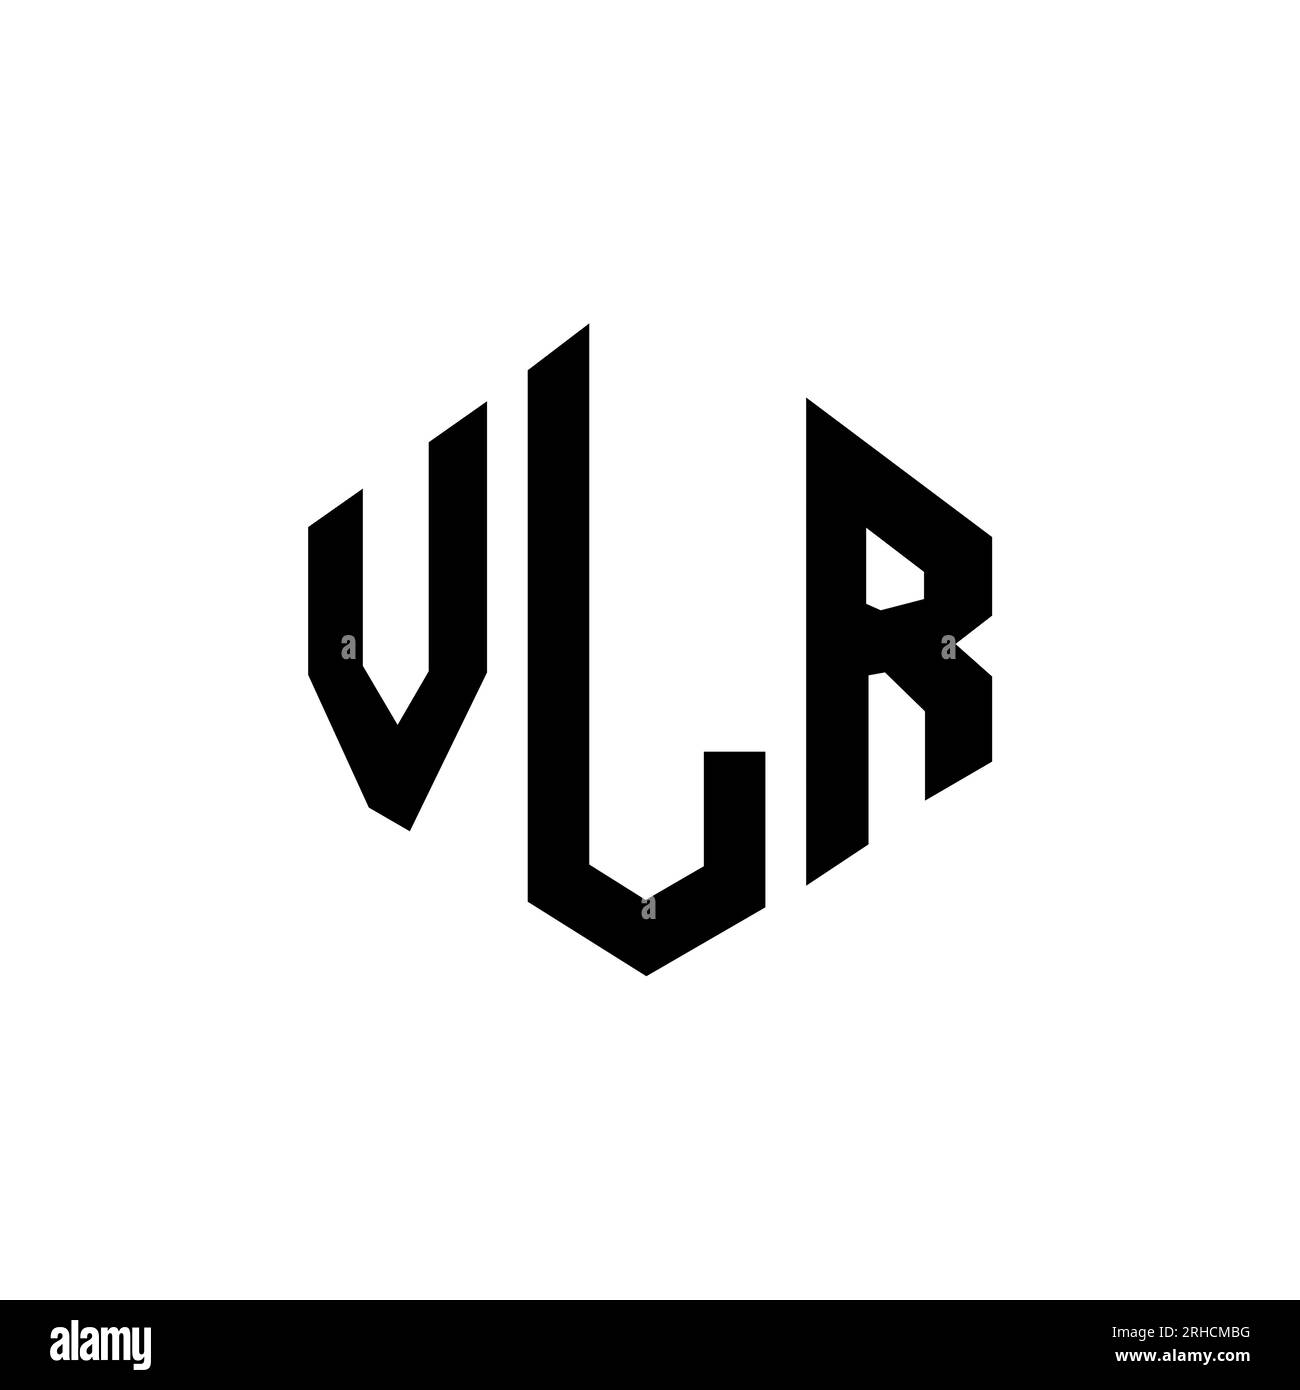 VLR Agency